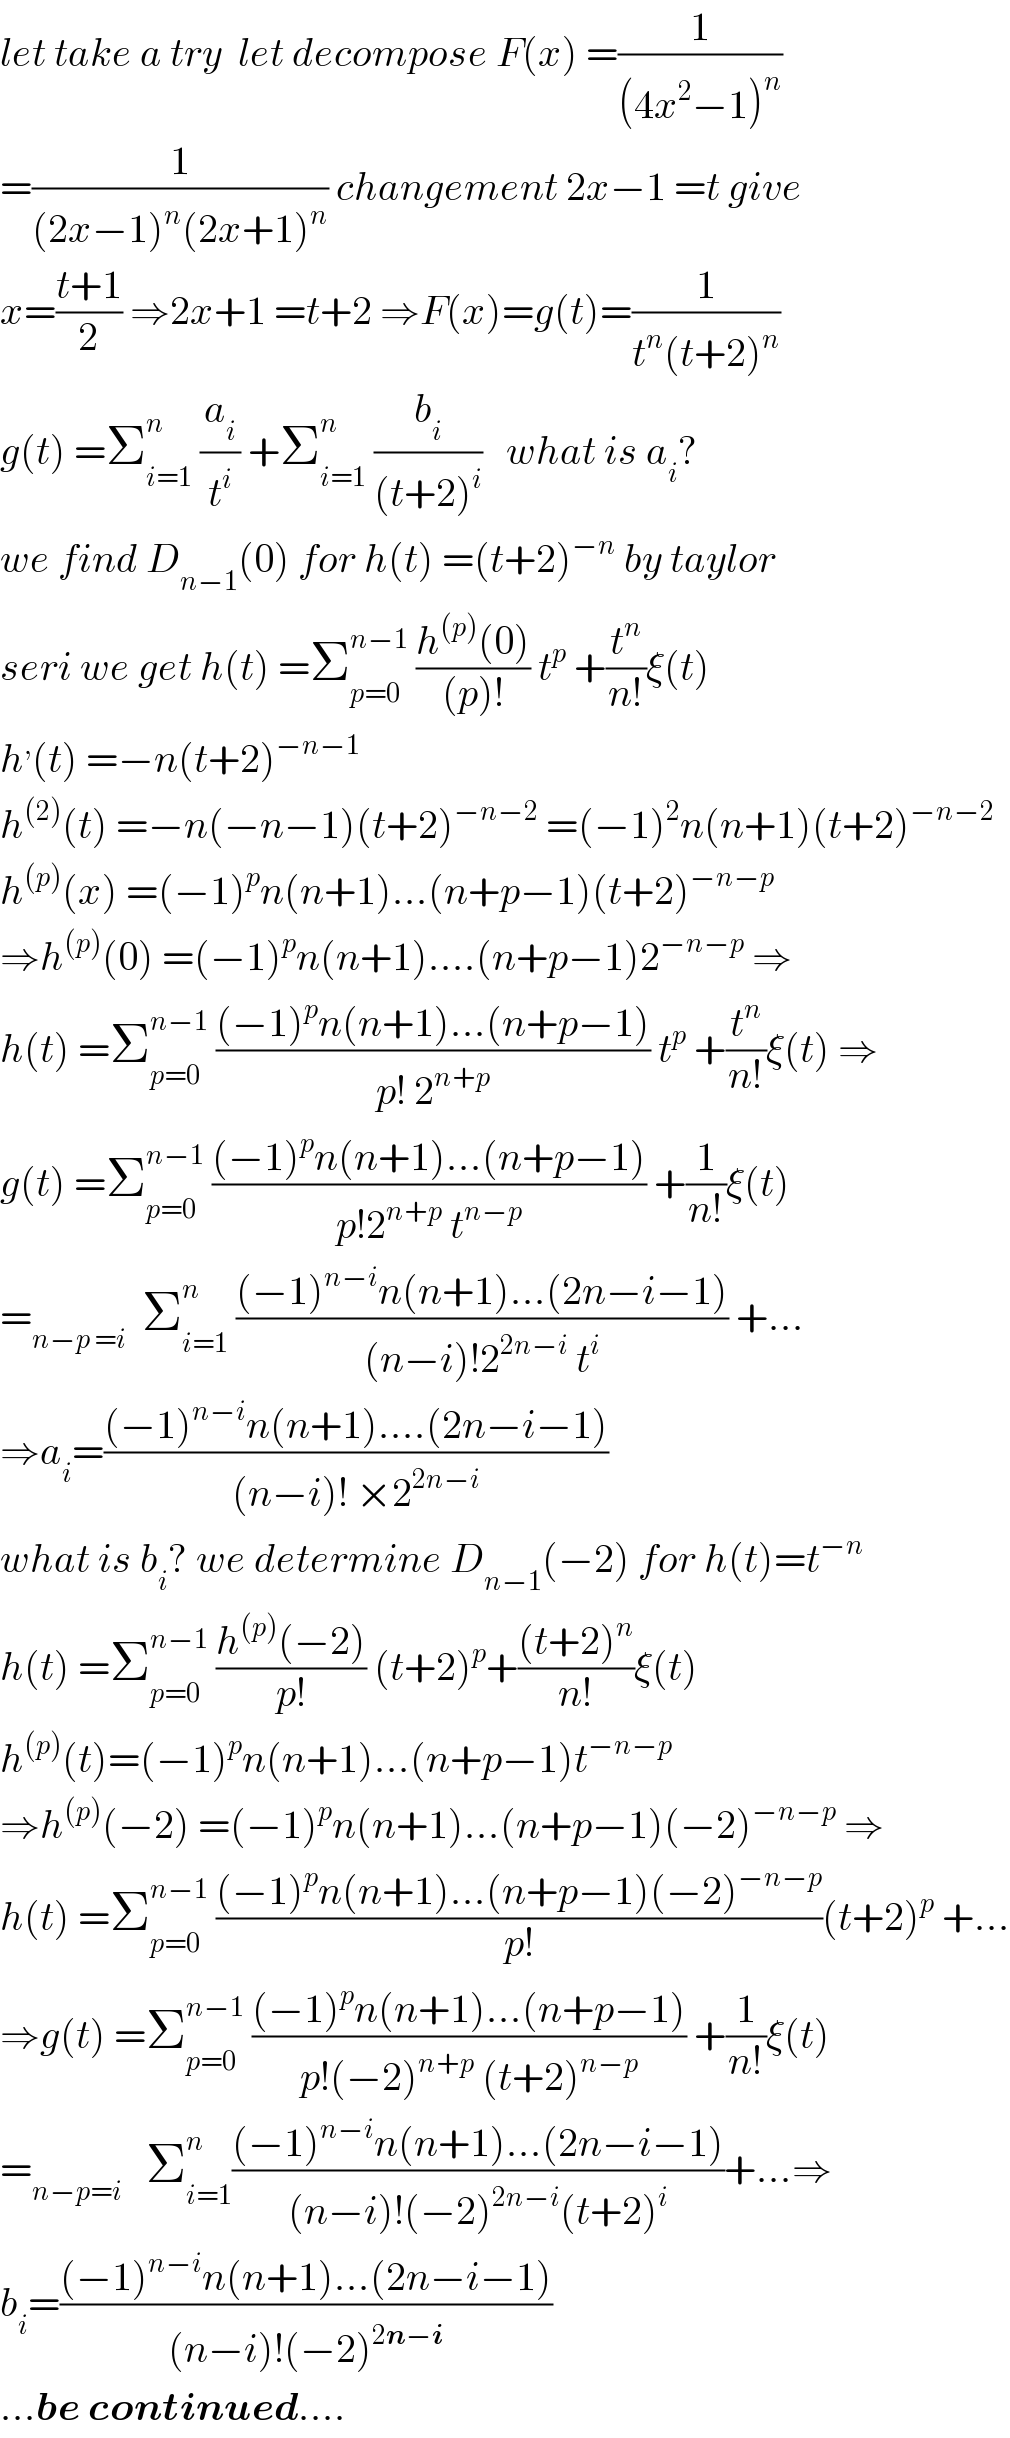 let take a try  let decompose F(x) =(1/((4x^2 −1)^n ))  =(1/((2x−1)^n (2x+1)^n )) changement 2x−1 =t give  x=((t+1)/2) ⇒2x+1 =t+2 ⇒F(x)=g(t)=(1/(t^n (t+2)^n ))  g(t) =Σ_(i=1) ^n  (a_i /t^i ) +Σ_(i=1) ^n  (b_i /((t+2)^i ))   what is a_i ?  we find D_(n−1) (0) for h(t) =(t+2)^(−n)  by taylor  seri we get h(t) =Σ_(p=0) ^(n−1)  ((h^((p)) (0))/((p)!)) t^p  +(t^n /(n!))ξ(t)  h^, (t) =−n(t+2)^(−n−1)    h^((2)) (t) =−n(−n−1)(t+2)^(−n−2)  =(−1)^2 n(n+1)(t+2)^(−n−2)   h^((p)) (x) =(−1)^p n(n+1)...(n+p−1)(t+2)^(−n−p)   ⇒h^((p)) (0) =(−1)^p n(n+1)....(n+p−1)2^(−n−p)  ⇒  h(t) =Σ_(p=0) ^(n−1)  (((−1)^p n(n+1)...(n+p−1))/(p! 2^(n+p) )) t^p  +(t^n /(n!))ξ(t) ⇒  g(t) =Σ_(p=0) ^(n−1)  (((−1)^p n(n+1)...(n+p−1))/(p!2^(n+p)  t^(n−p) )) +(1/(n!))ξ(t)  =_(n−p =i)   Σ_(i=1) ^n  (((−1)^(n−i) n(n+1)...(2n−i−1))/((n−i)!2^(2n−i)  t^i )) +...  ⇒a_i =(((−1)^(n−i) n(n+1)....(2n−i−1))/((n−i)! ×2^(2n−i) ))  what is b_i ? we determine D_(n−1) (−2) for h(t)=t^(−n)   h(t) =Σ_(p=0) ^(n−1)  ((h^((p)) (−2))/(p!)) (t+2)^p +(((t+2)^n )/(n!))ξ(t)  h^((p)) (t)=(−1)^p n(n+1)...(n+p−1)t^(−n−p)   ⇒h^((p)) (−2) =(−1)^p n(n+1)...(n+p−1)(−2)^(−n−p)  ⇒  h(t) =Σ_(p=0) ^(n−1)  (((−1)^p n(n+1)...(n+p−1)(−2)^(−n−p) )/(p!))(t+2)^p  +...  ⇒g(t) =Σ_(p=0) ^(n−1)  (((−1)^p n(n+1)...(n+p−1))/(p!(−2)^(n+p)  (t+2)^(n−p) )) +(1/(n!))ξ(t)  =_(n−p=i)    Σ_(i=1) ^n (((−1)^(n−i) n(n+1)...(2n−i−1))/((n−i)!(−2)^(2n−i) (t+2)^i ))+...⇒  b_i =(((−1)^(n−i) n(n+1)...(2n−i−1))/((n−i)!(−2)^(2n−i) ))  ...be continued....  